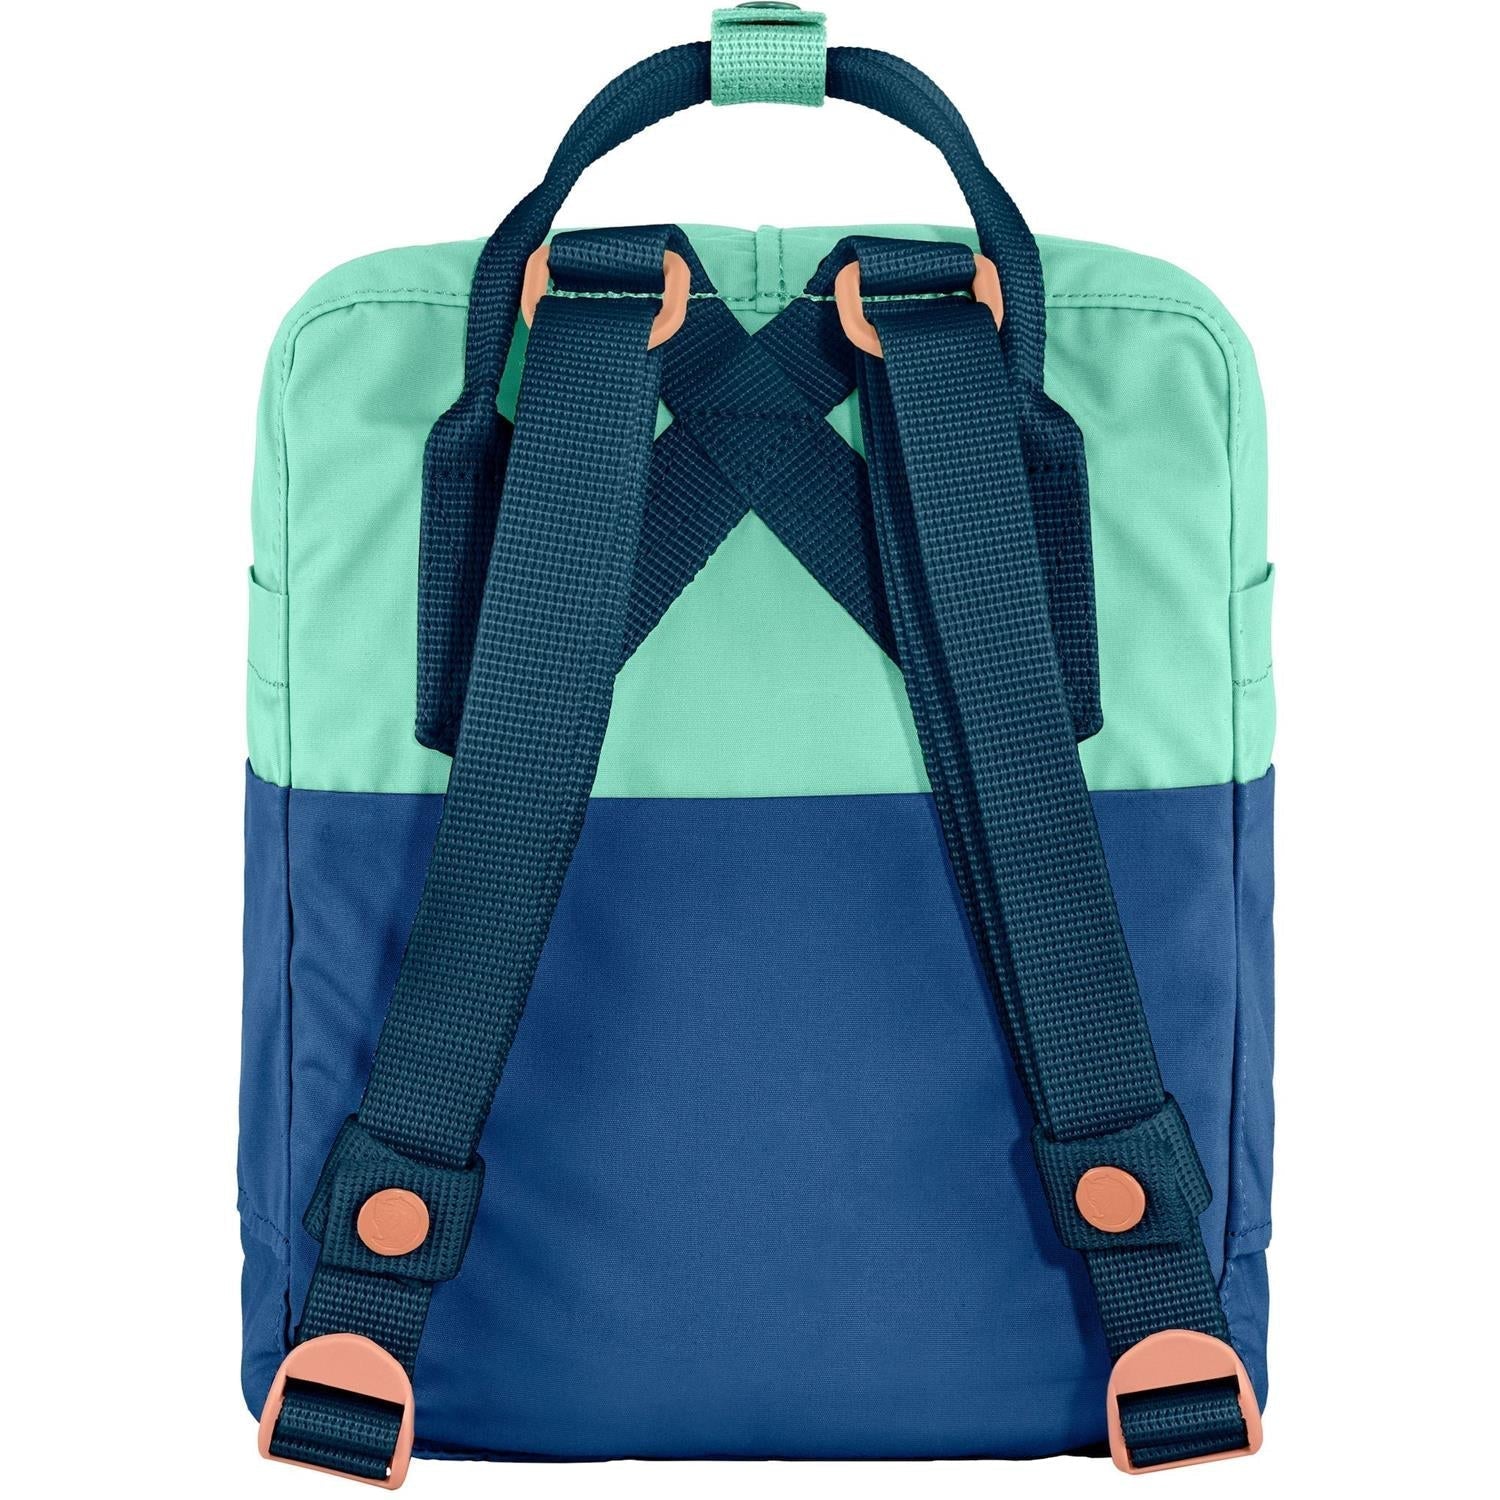 Compra FjallRaven Kanken Art Plus una mochila con un diseño único